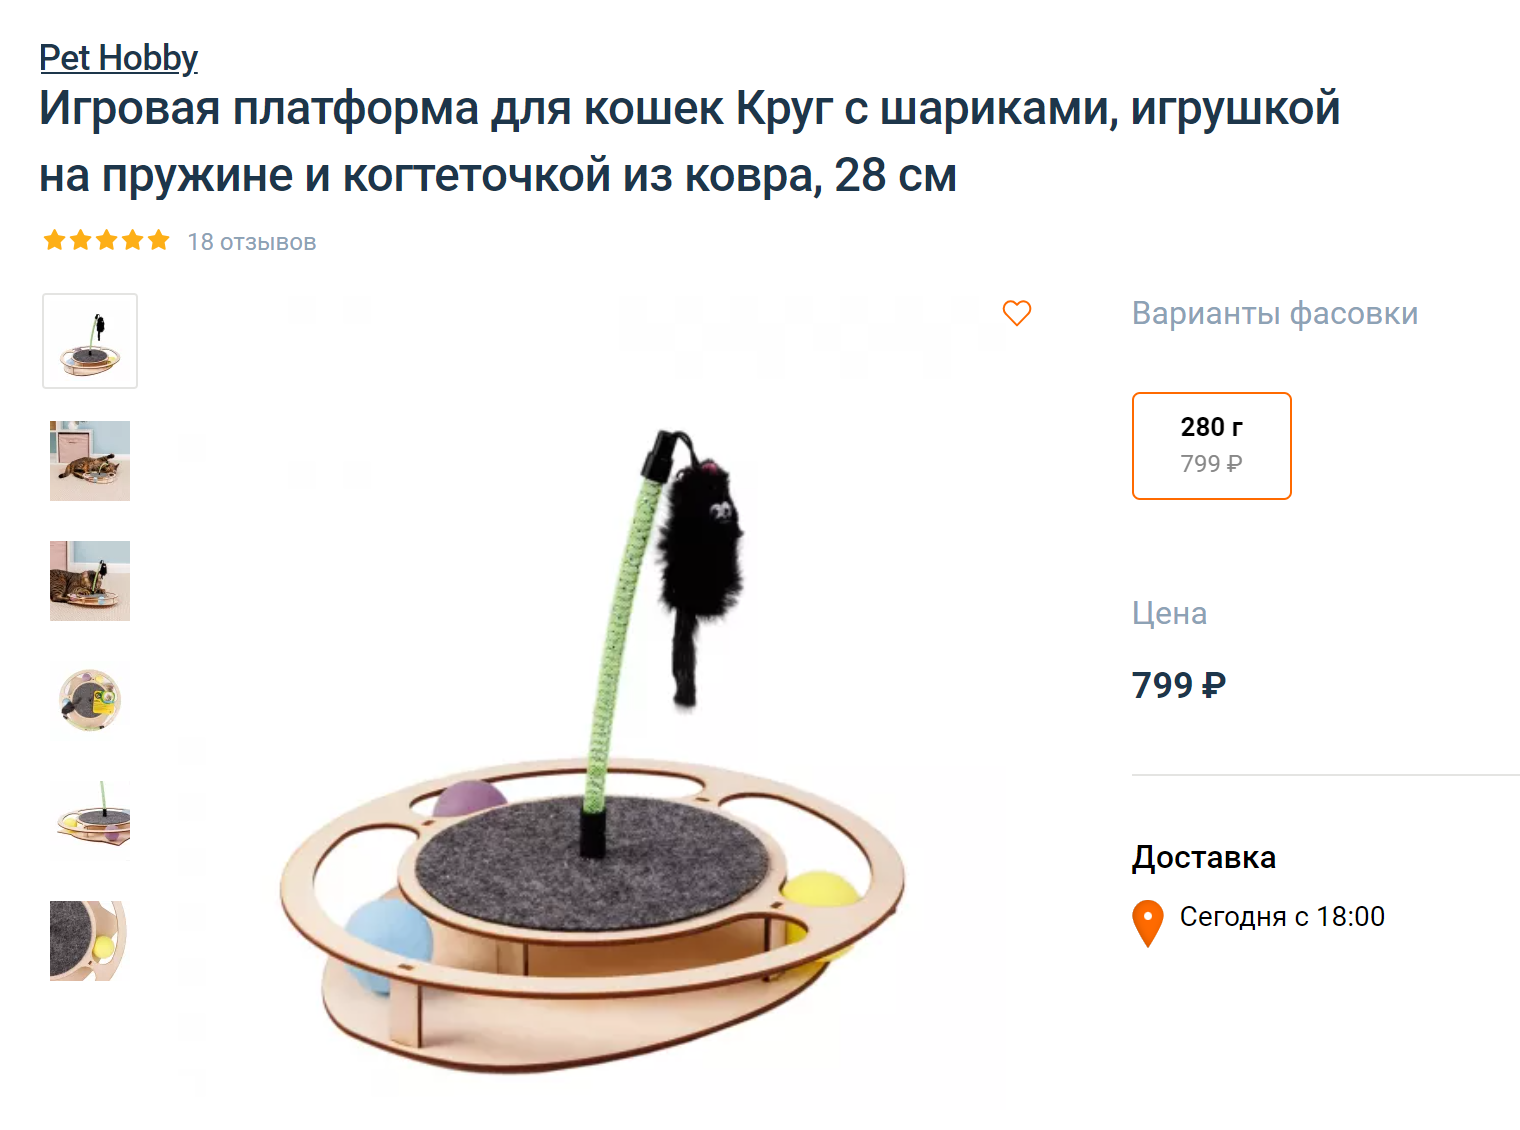 Классическая интерактивная игрушка: к платформе прикреплен столбик на пружине. На его конце болтается игрушка, которая привлекает внимание кошки. Источник: 4lapy.ru